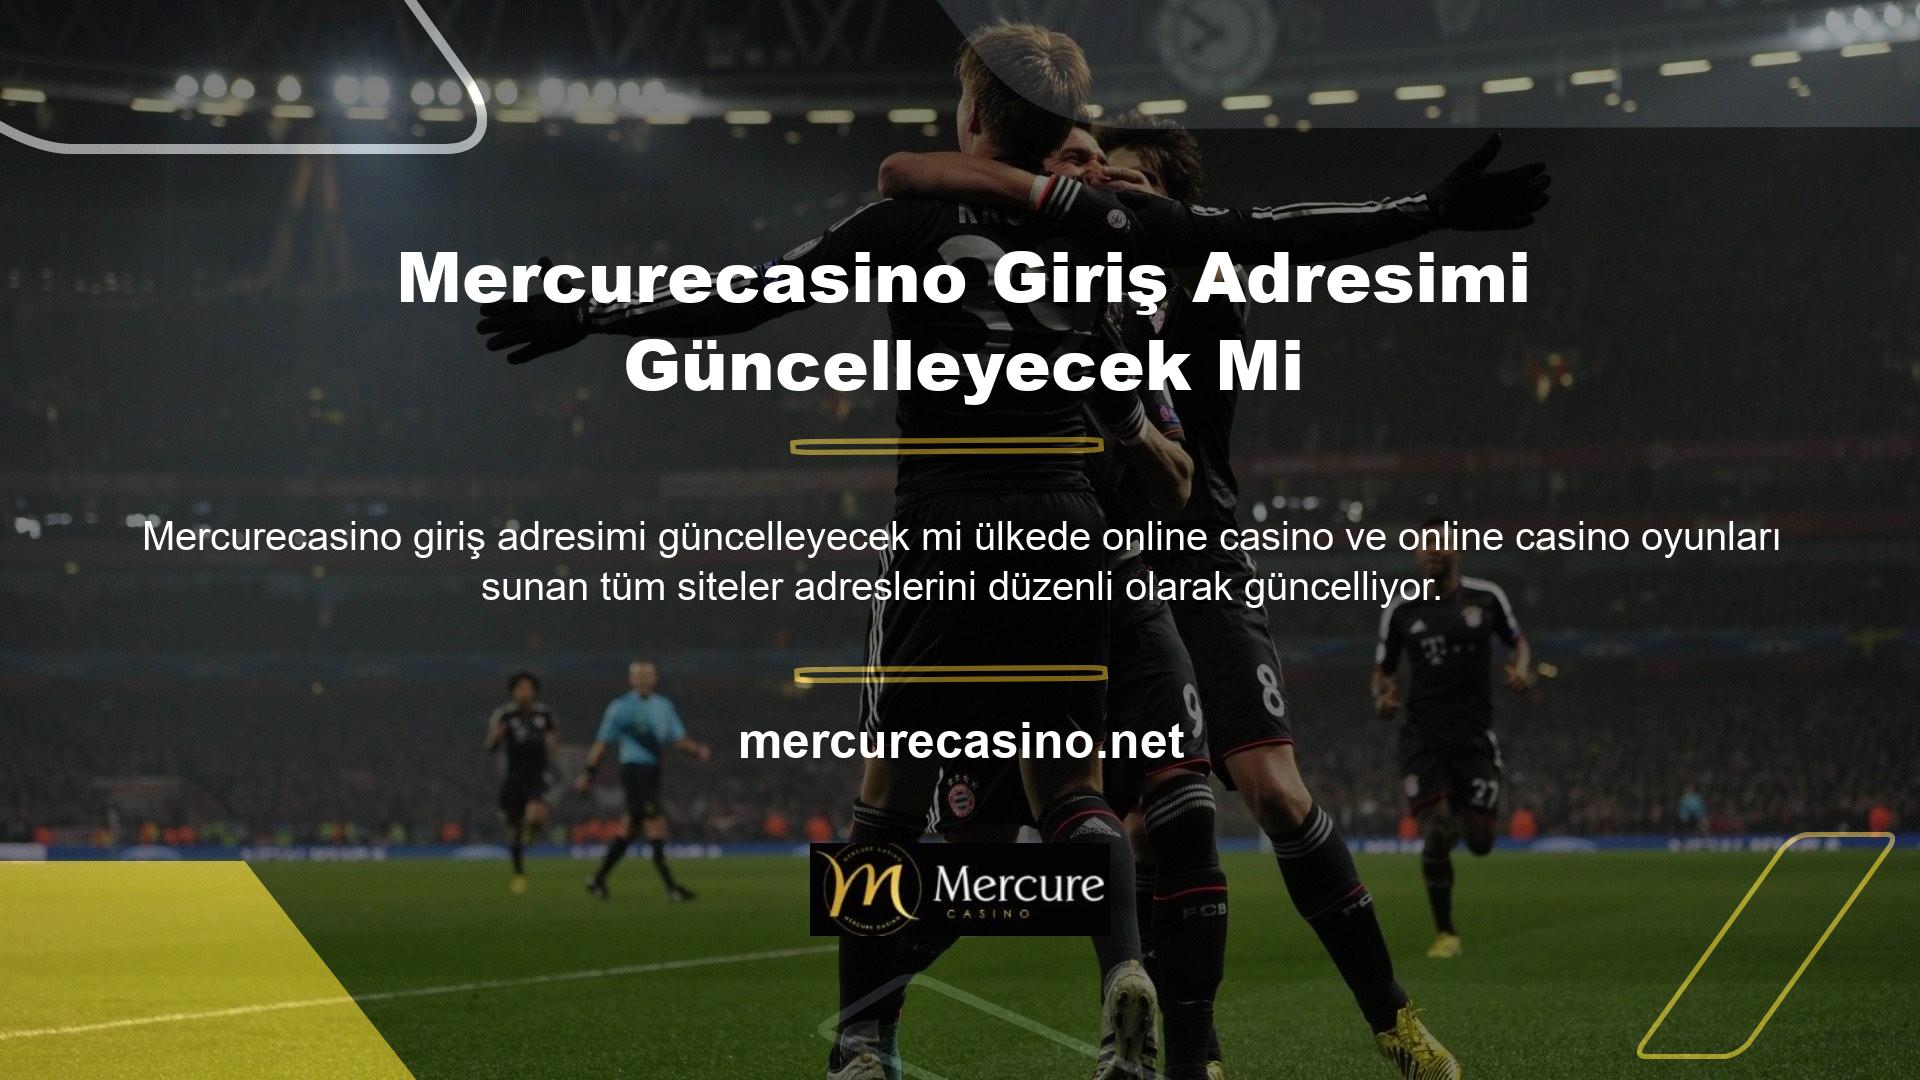 Mercurecasino ve diğer lisanslı çevrimiçi casino ve casino siteleri de yasa dışı olmayan adresleri günceller